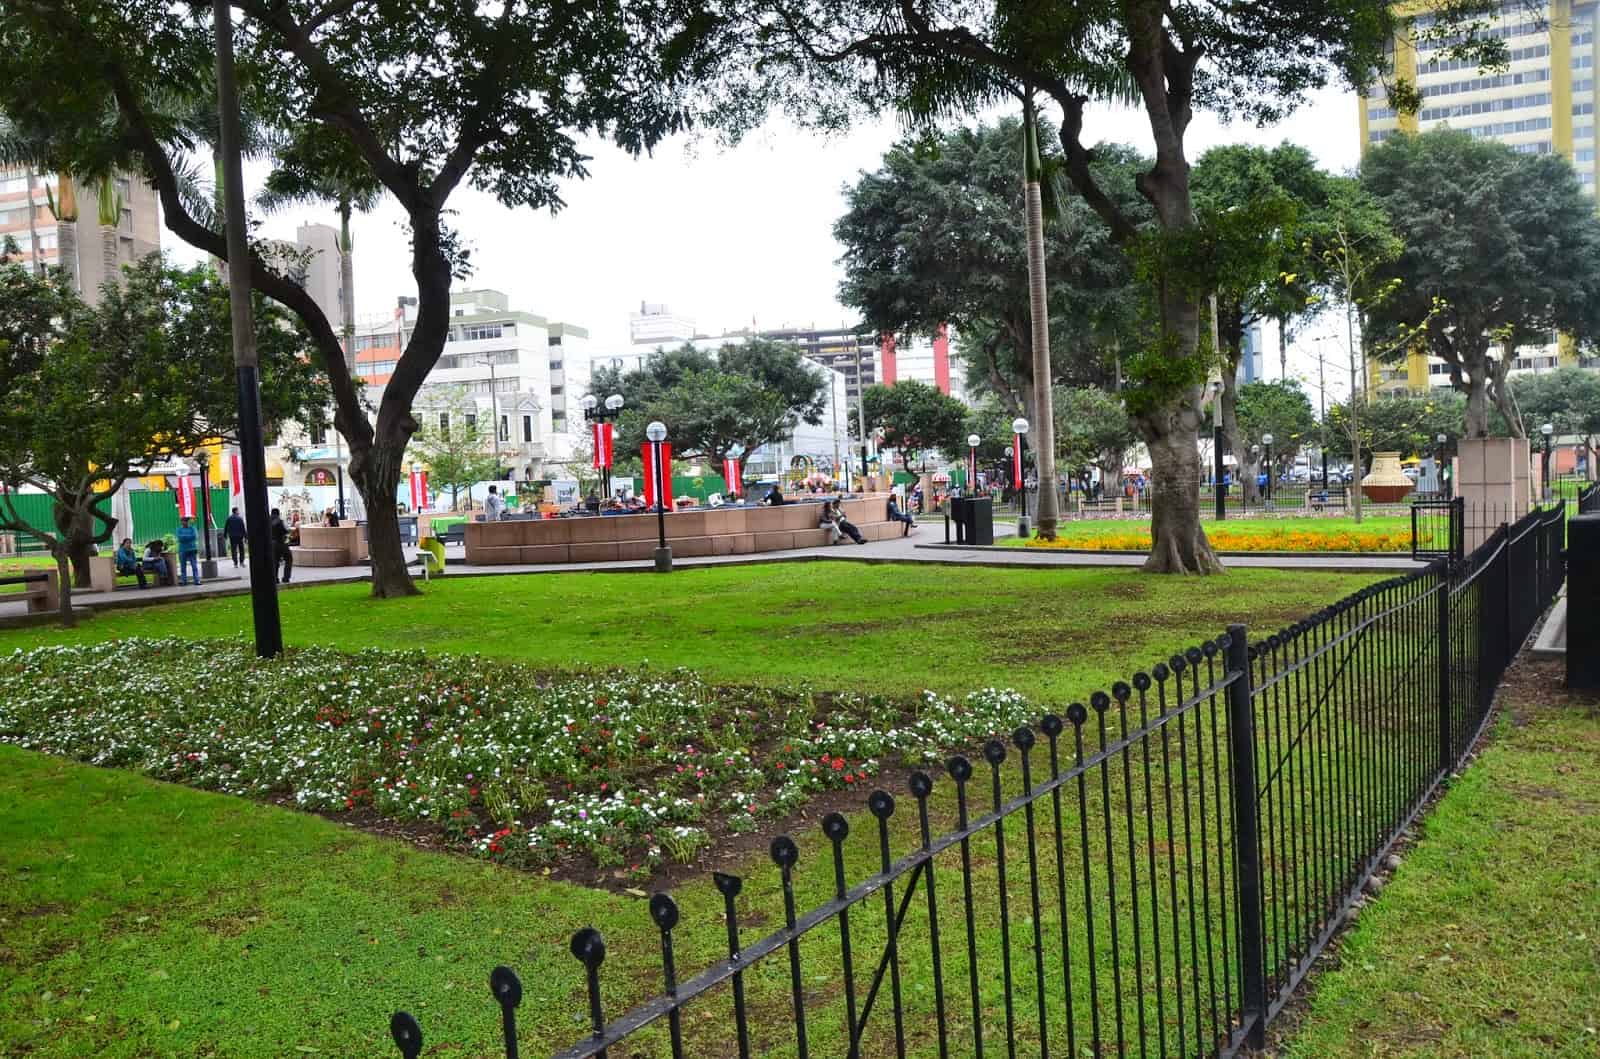 Parque Kennedy in Miraflores, Lima, Peru